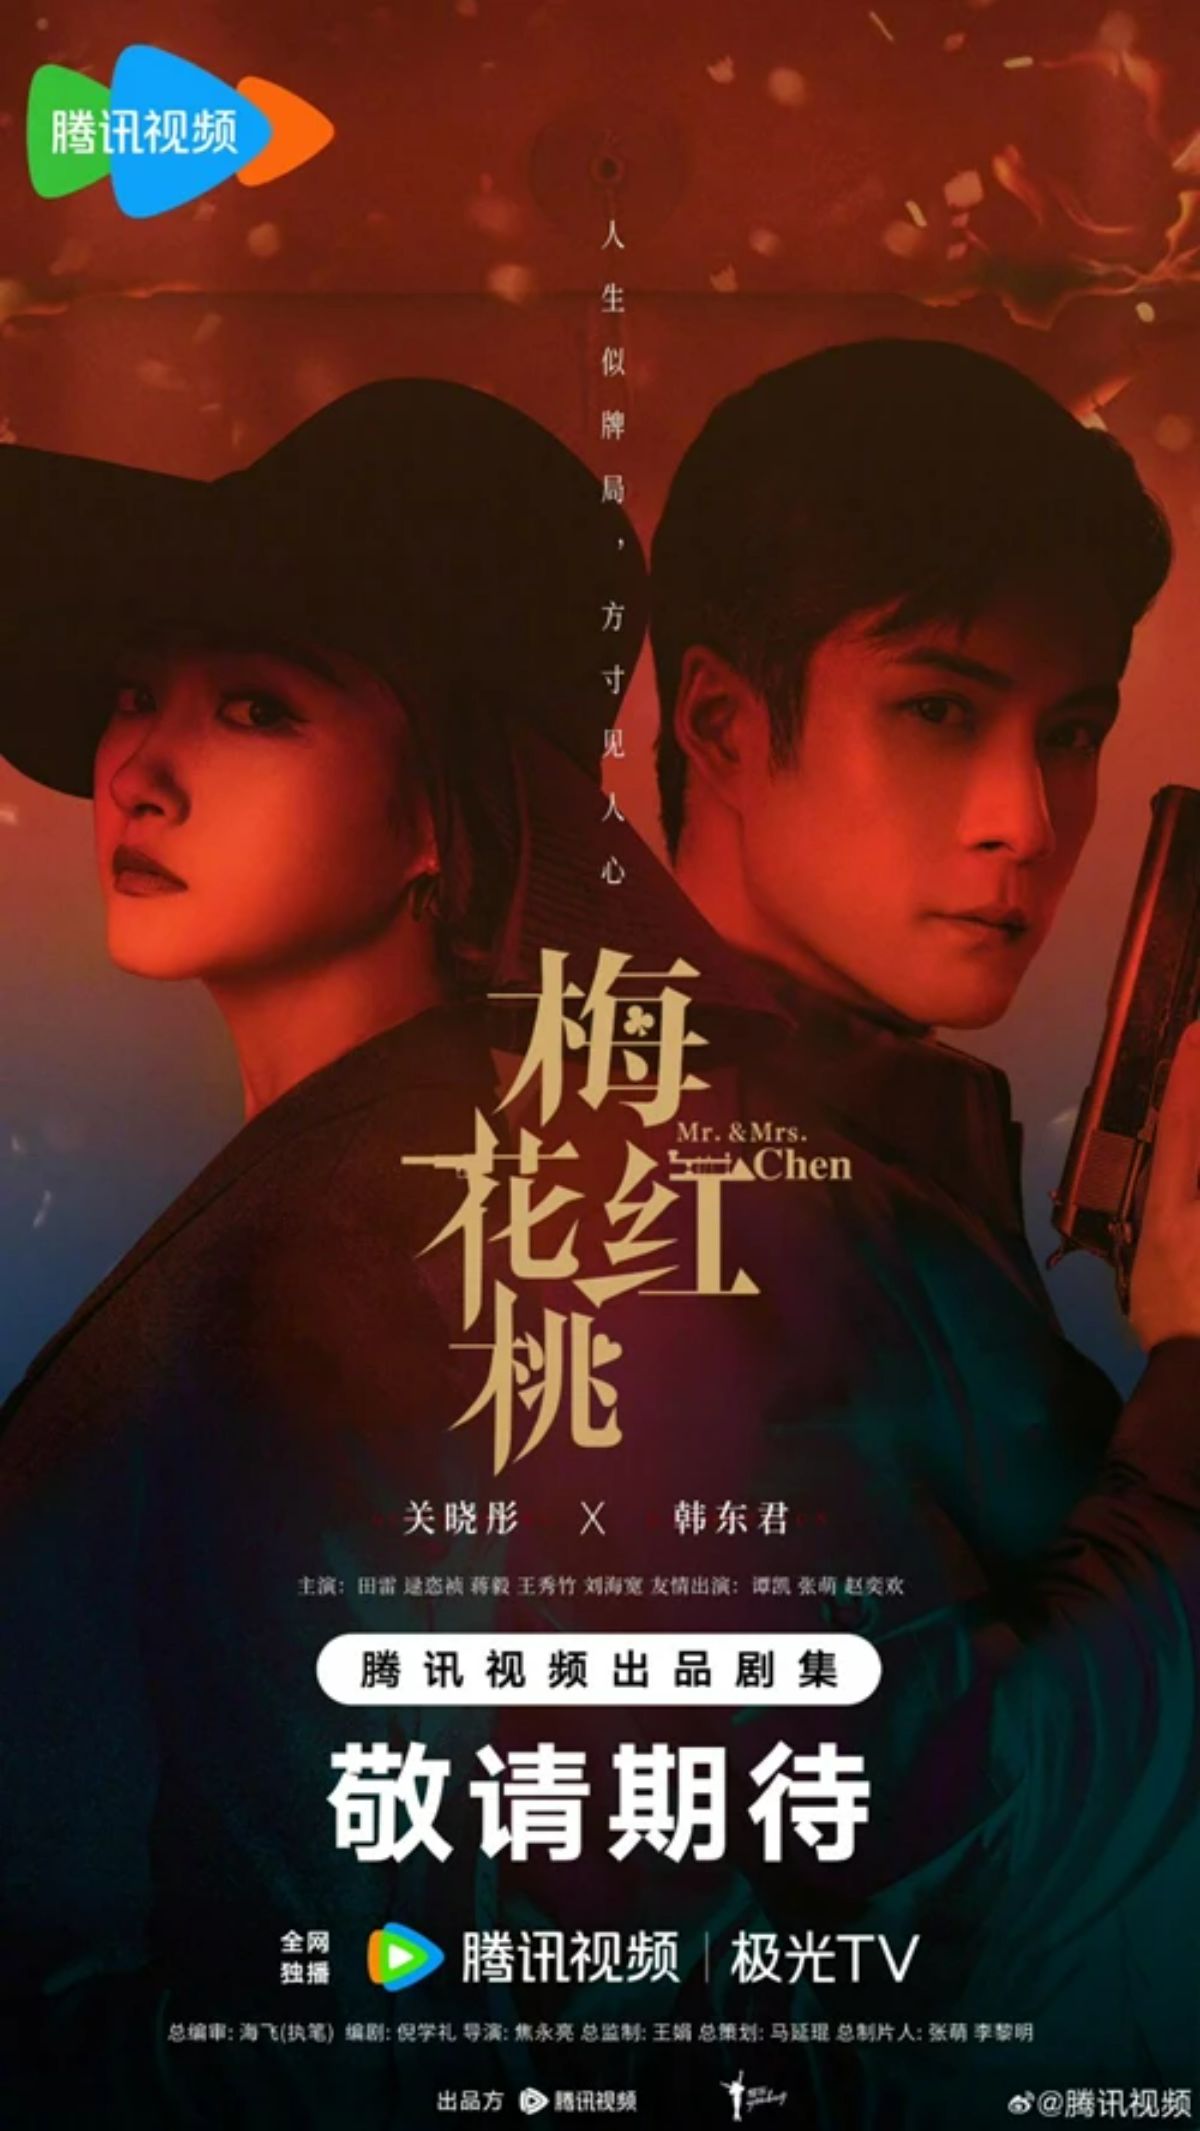 Mai Hoa Hồng Đào là một bộ phim truyền hình hiện đại mang chủ đề về chiến tranh được quay tại Trung Quốc đại lục năm 2022